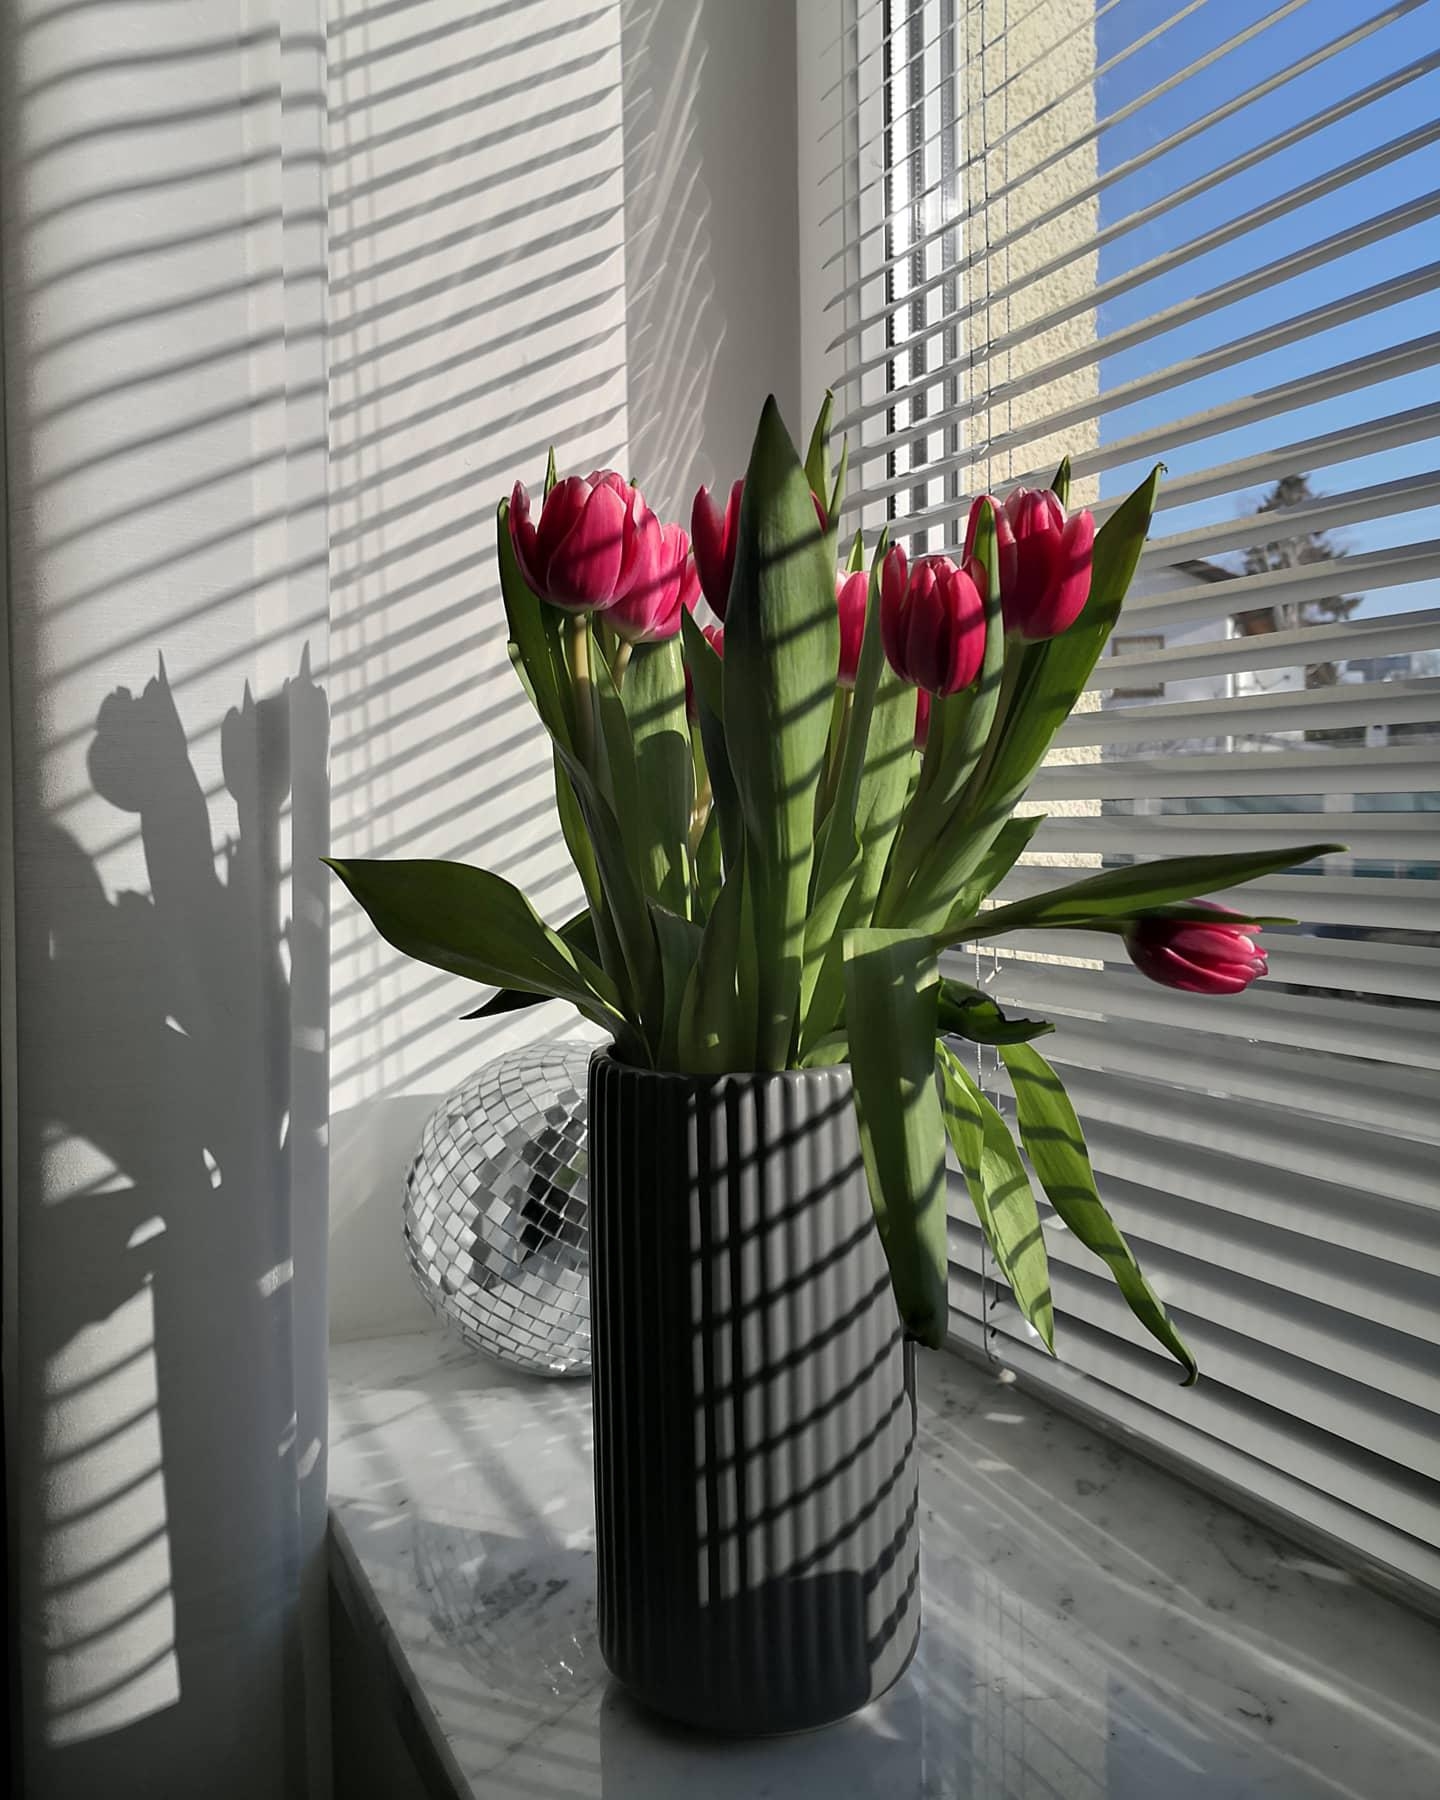 Frühlingsgefühle im Februar 🌷☀️
#tulpen #fensterblick #couchliebt #licht #wohnzimmer 